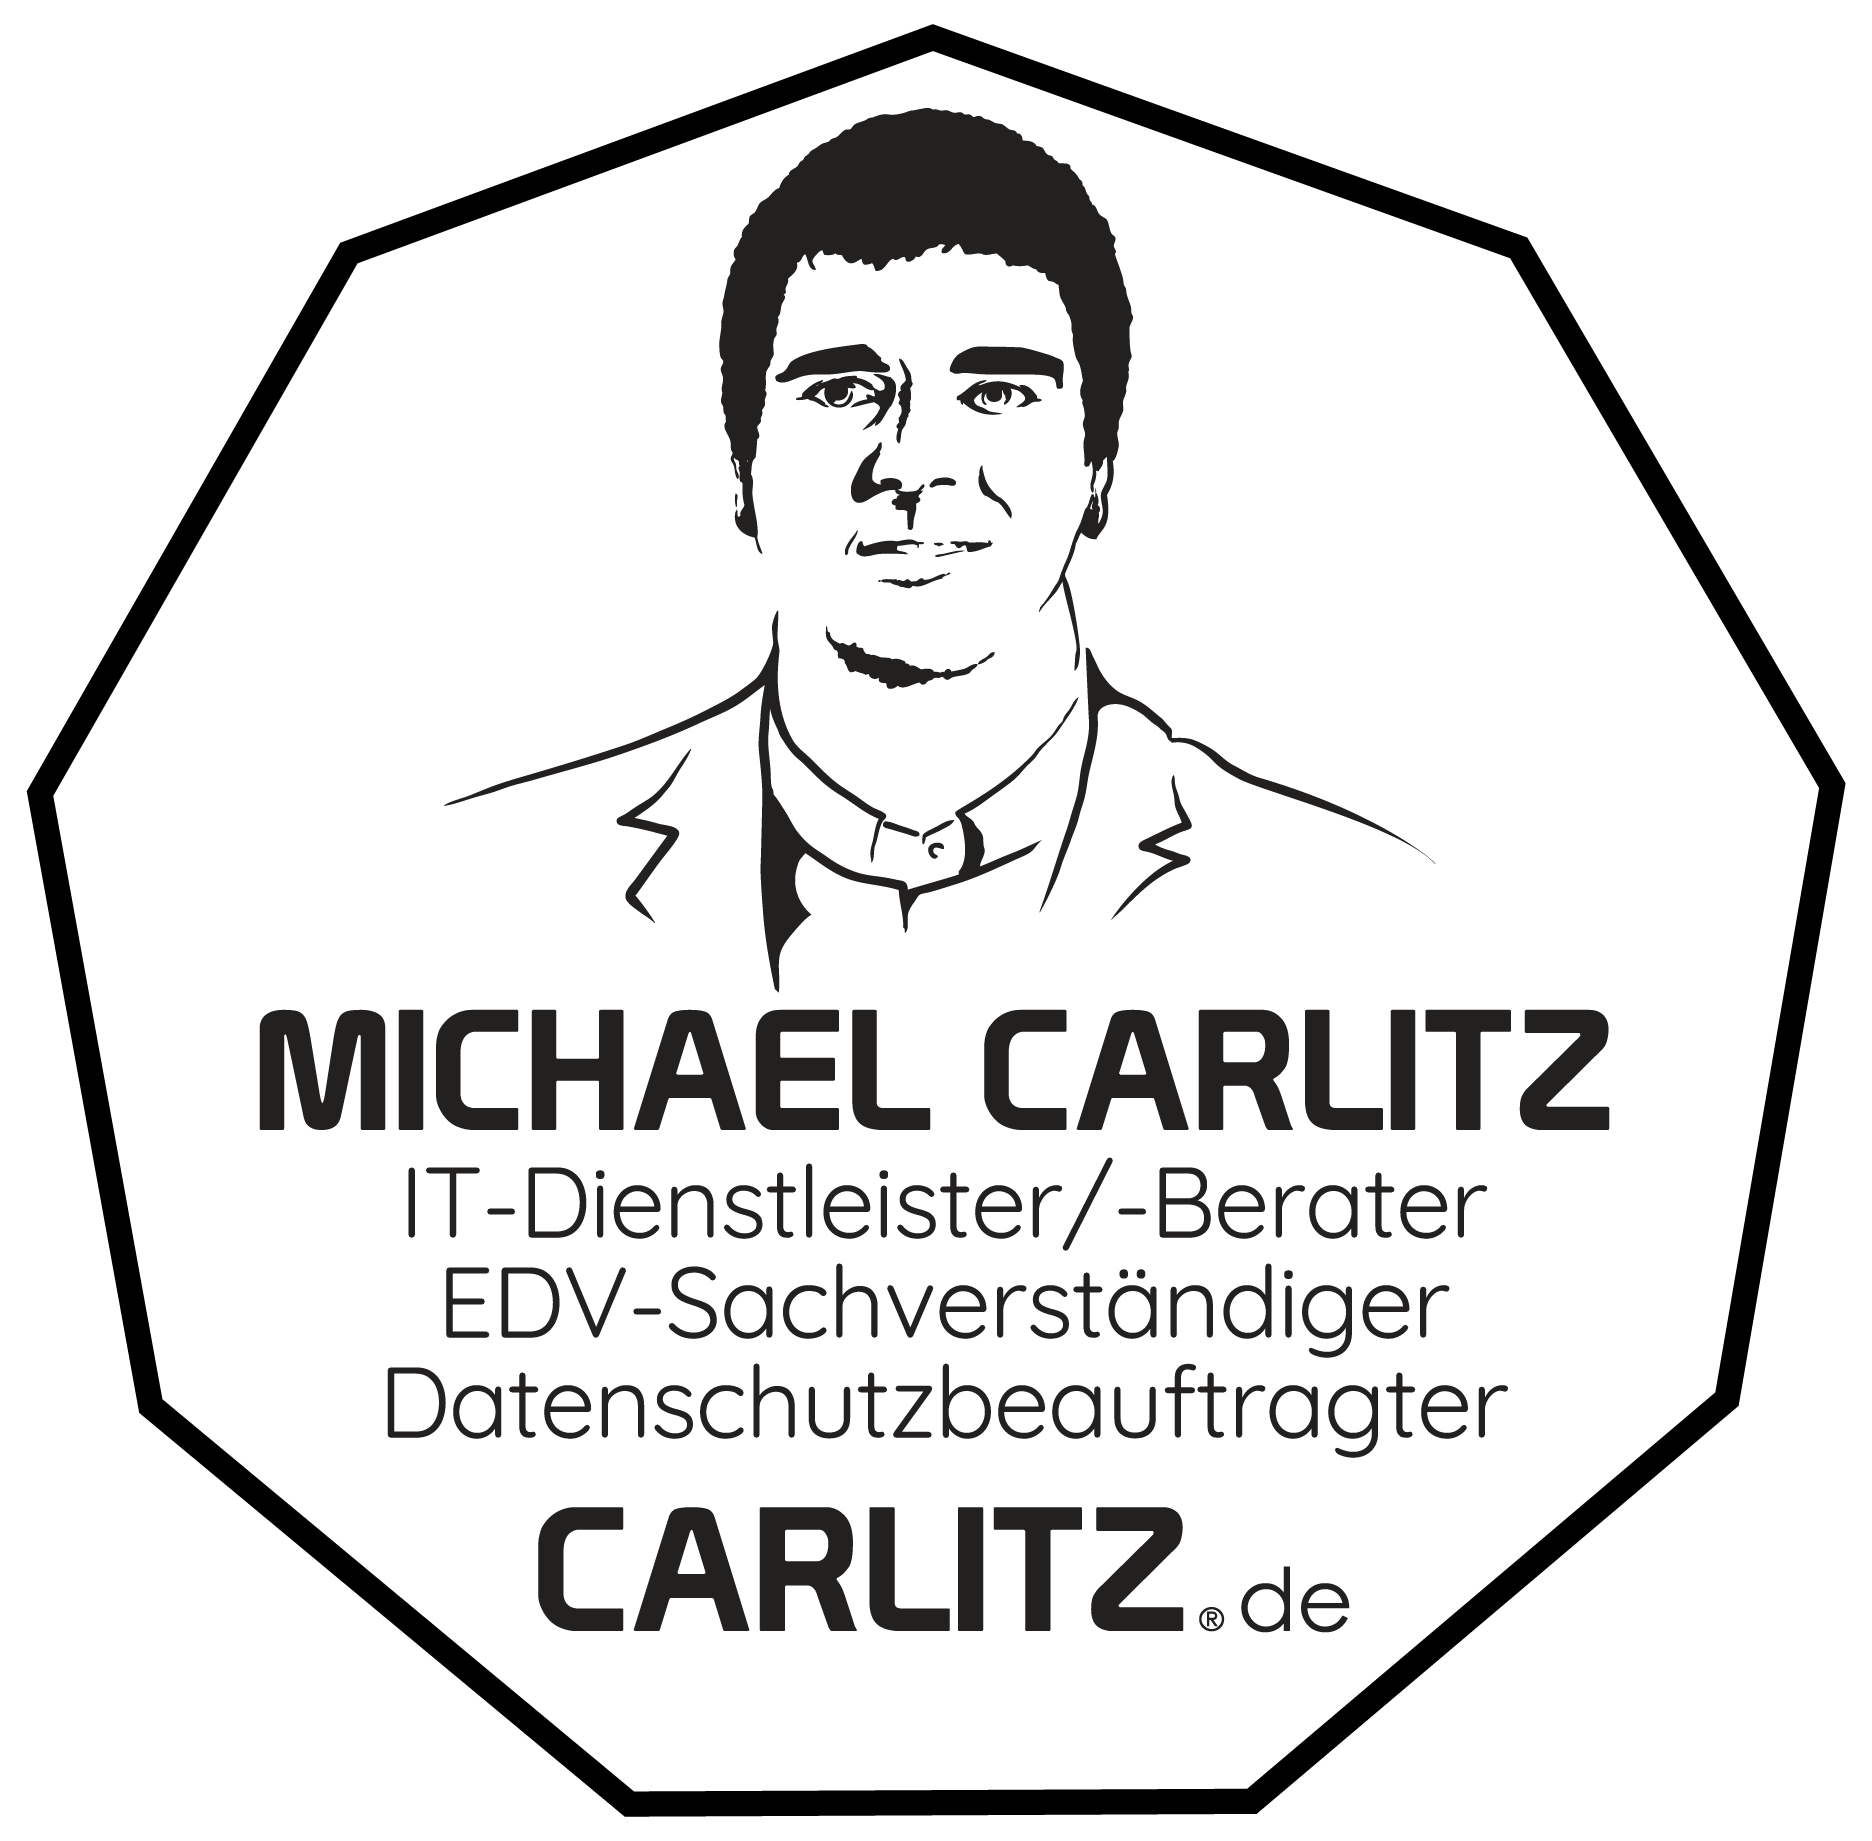 Michael Carlitz | IT-Dienstleister-/Berater - EDV-Sachverständiger - Datenschutzbeauftragter